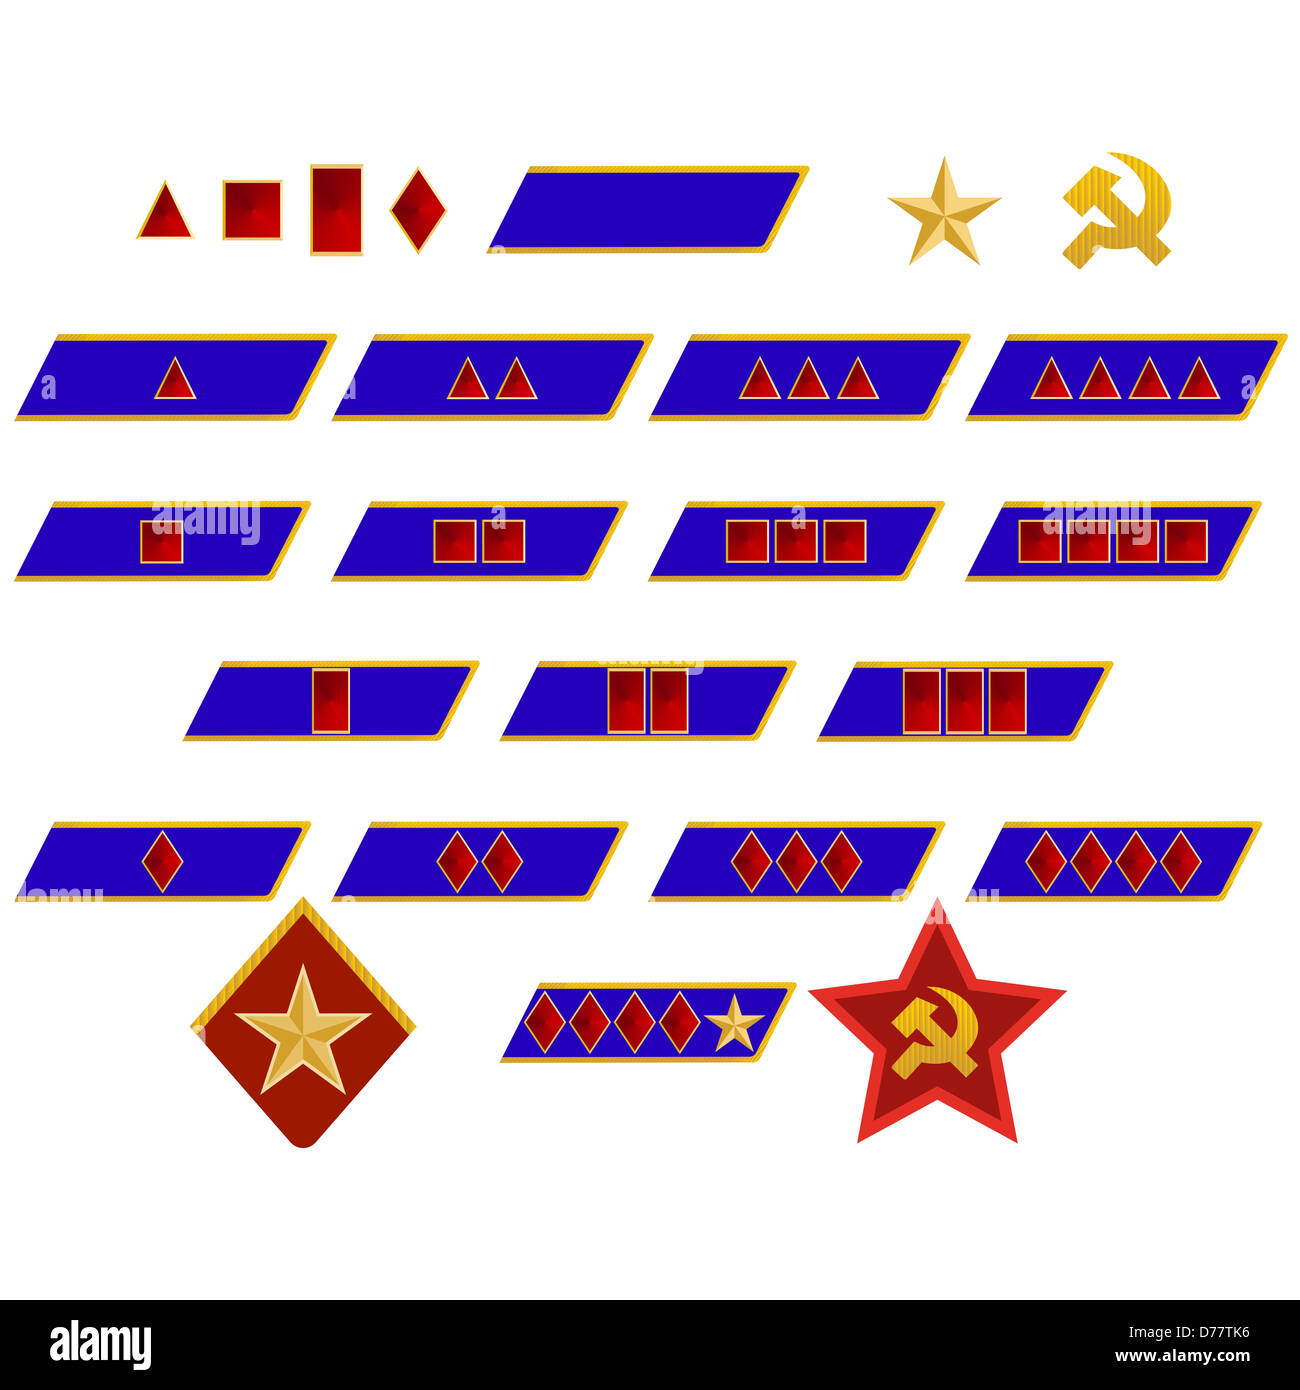 Militärische Ränge und Abzeichen der Welt. Die Abbildung auf einem weißen Hintergrund. Stockfoto